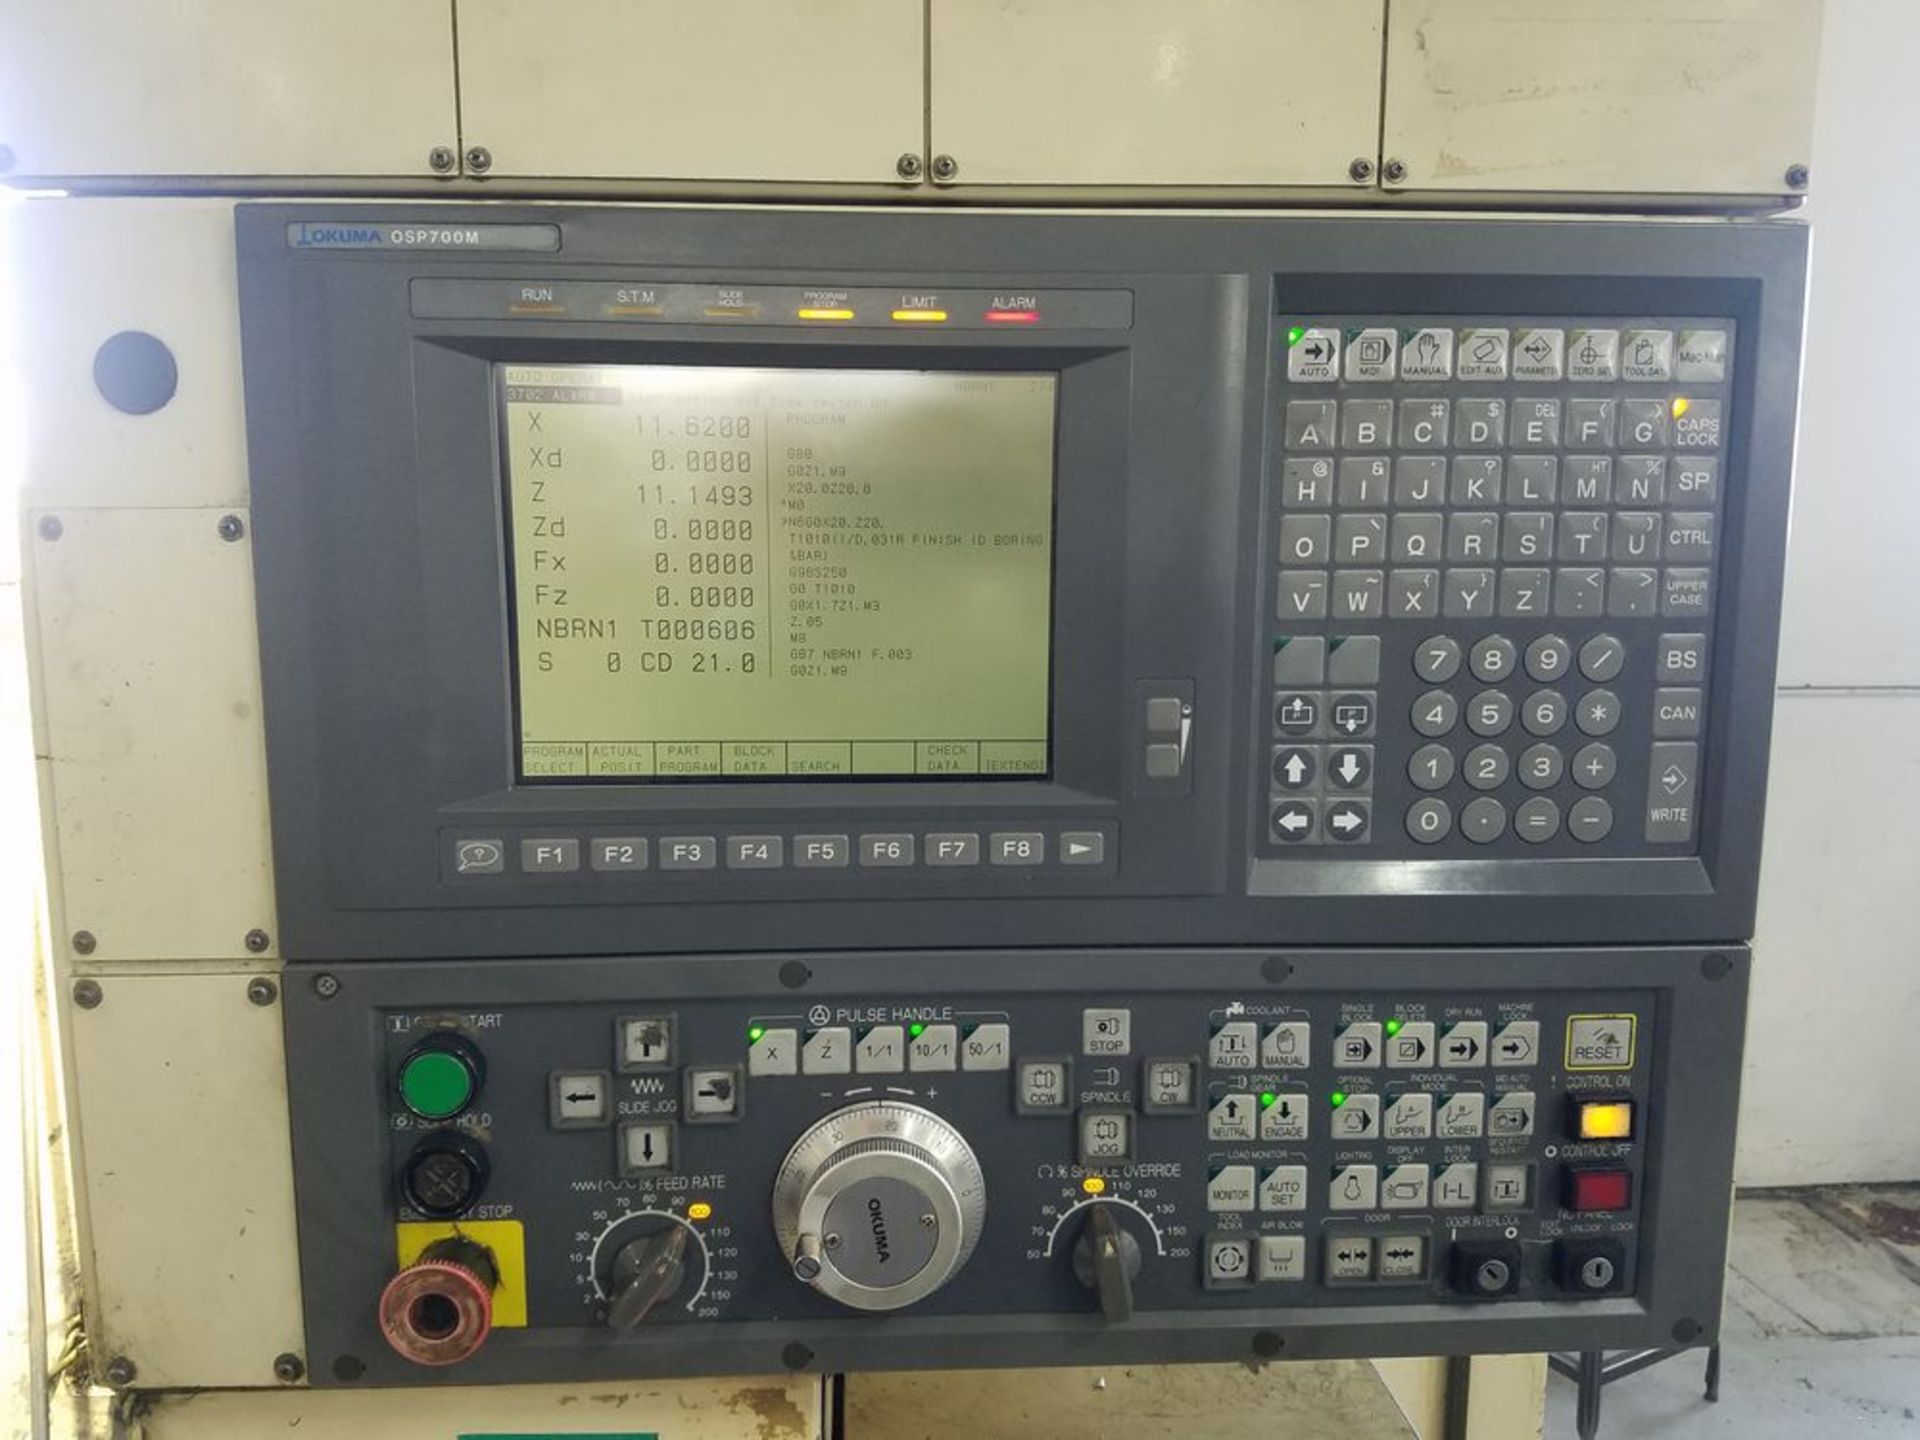 (1996) Okuma Cadet CNC Turning Center w/ Okuma OSP700m CNC Controls, 12-Position Turret, - Image 3 of 5